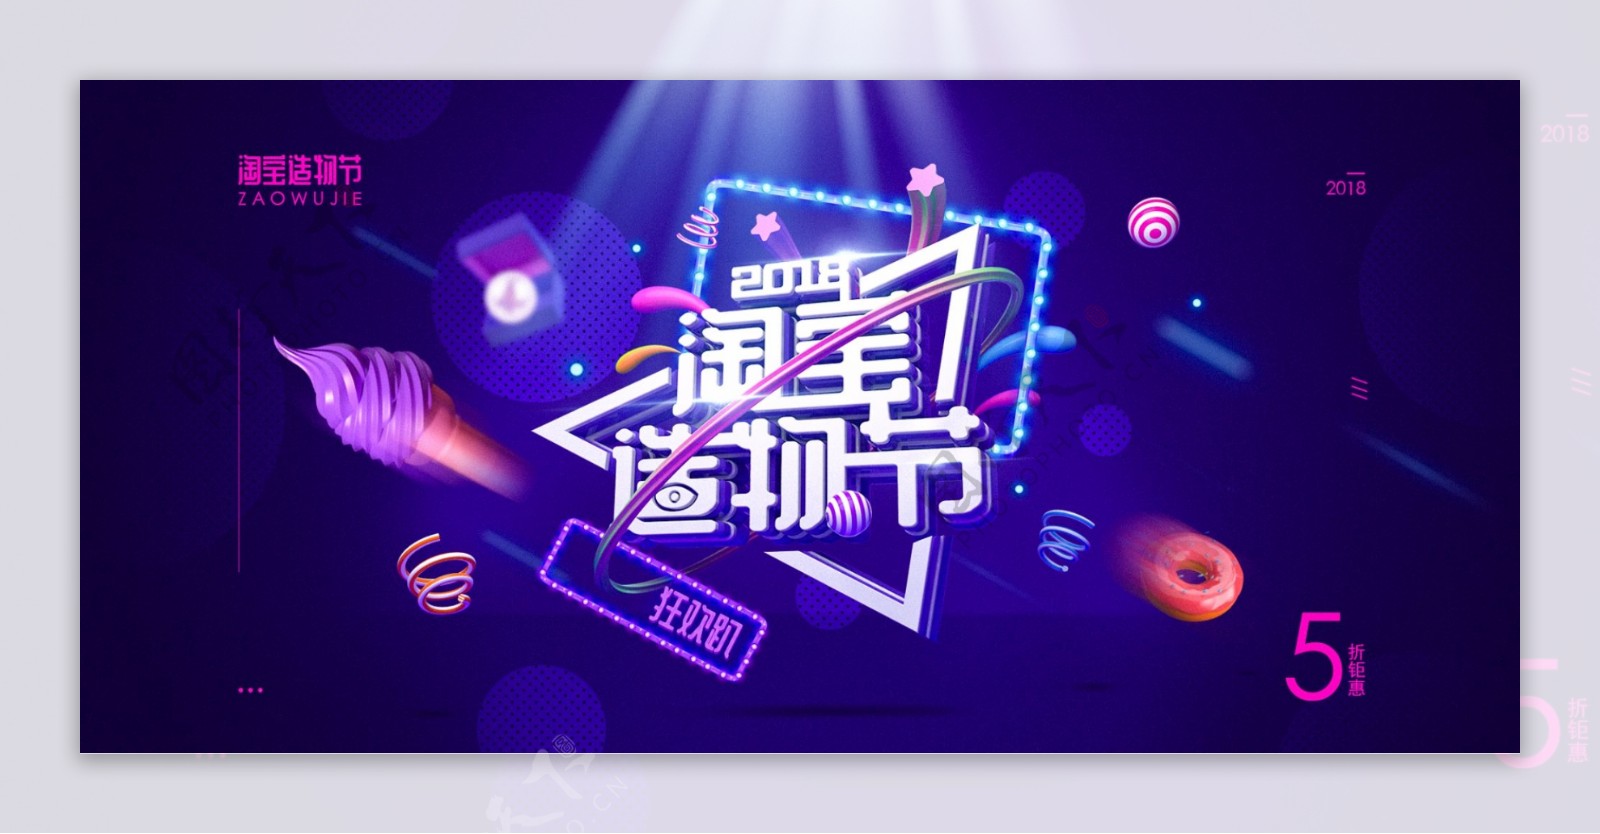 时尚炫酷淘宝造物节促销banner